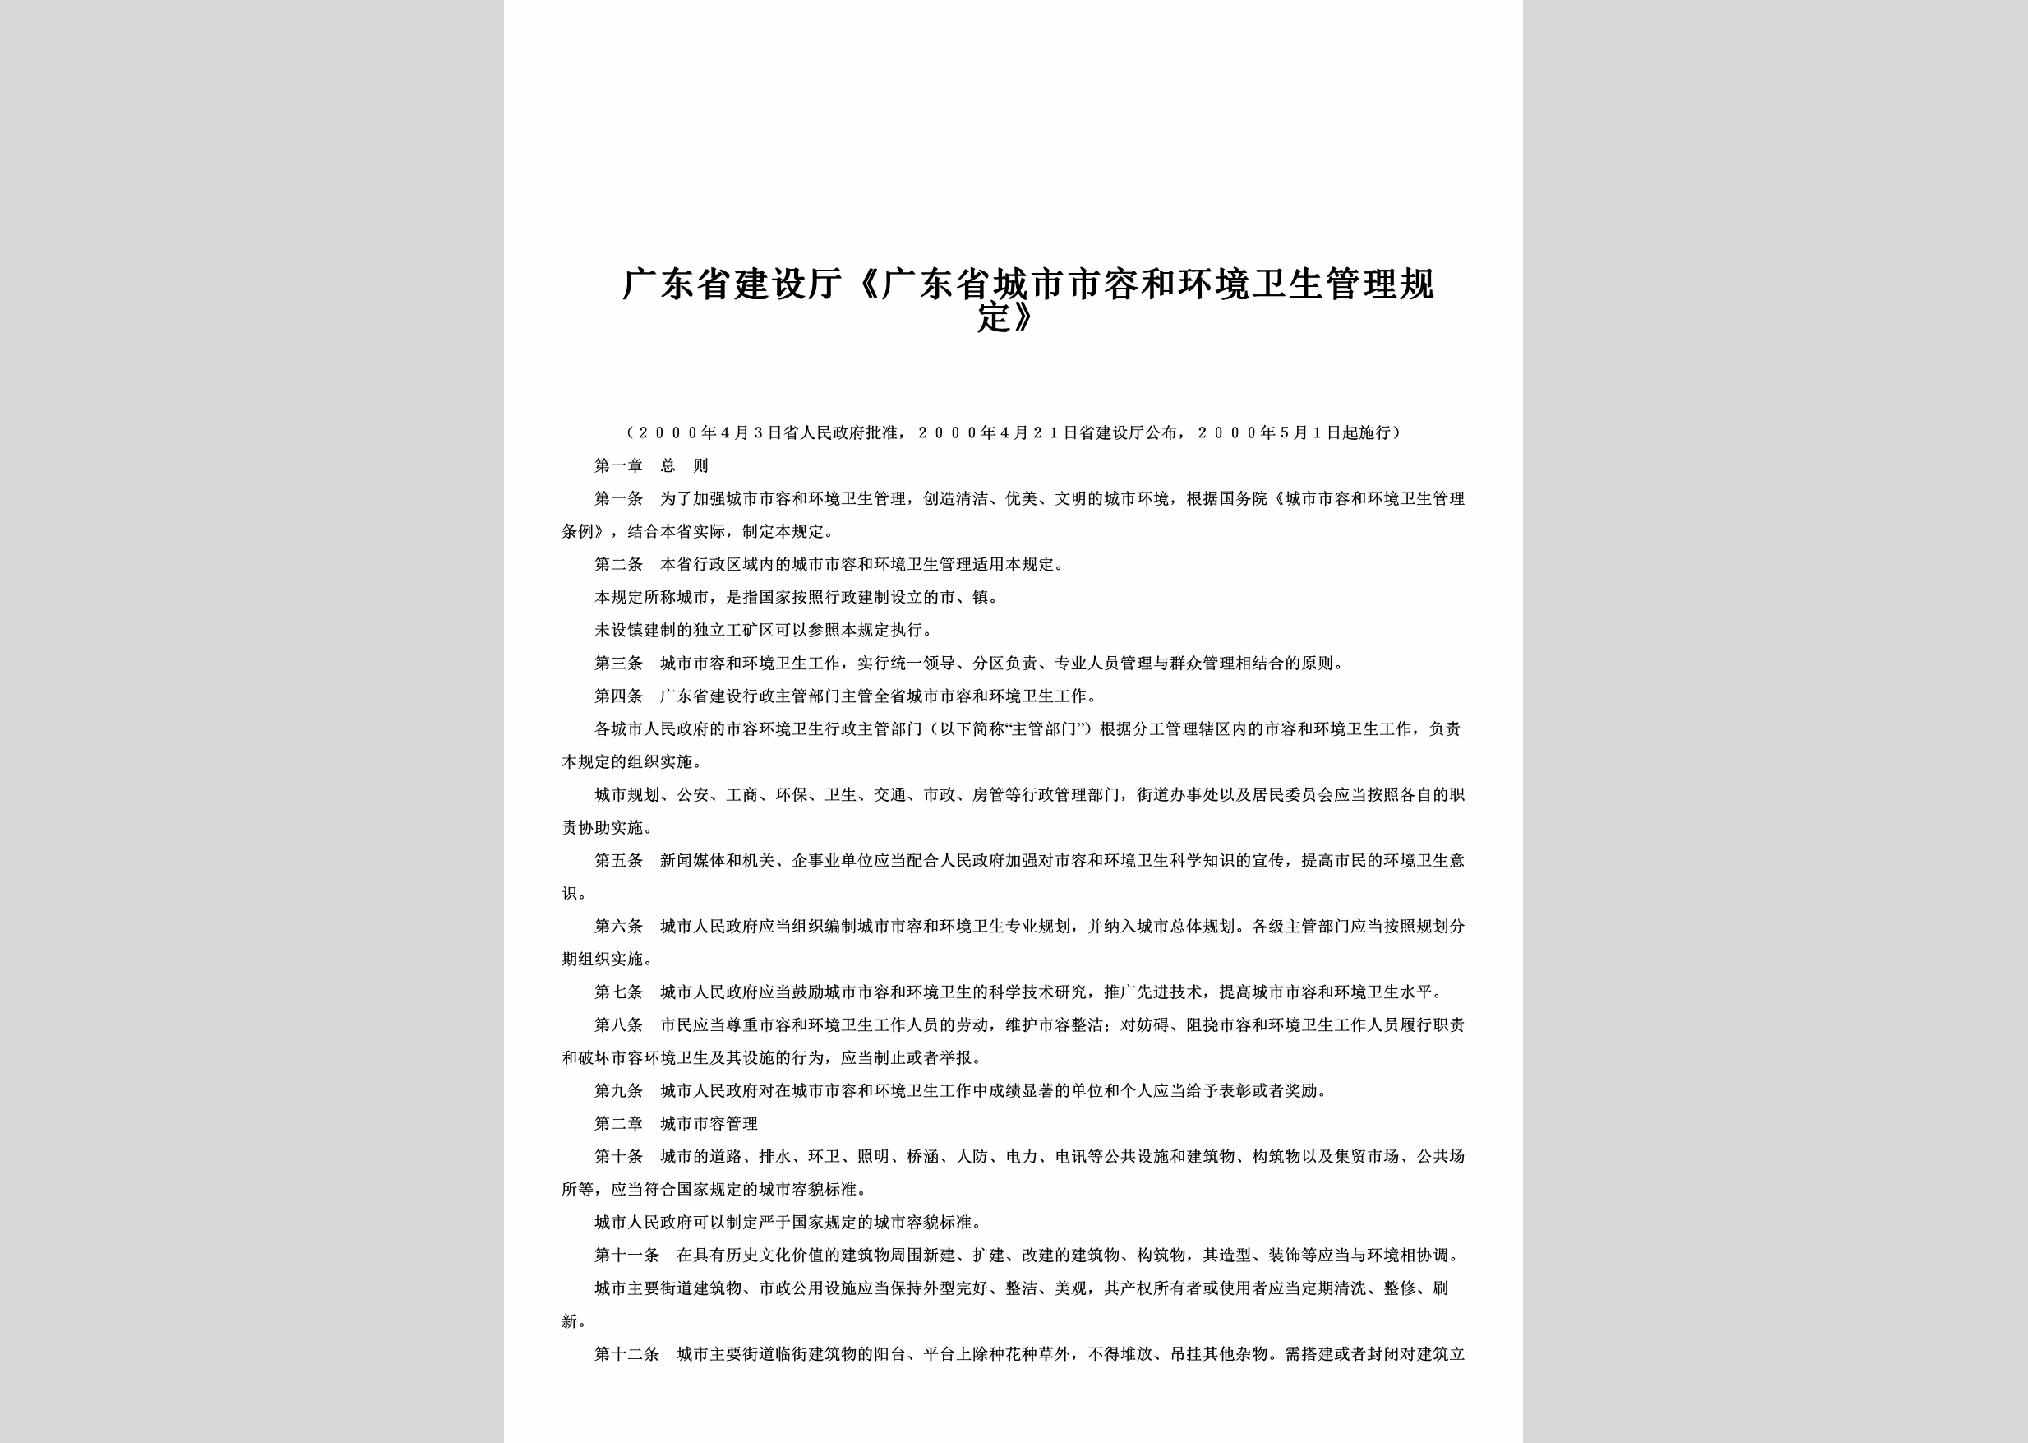 GD-SRHJGLGD-2000：《广东省城市市容和环境卫生管理规定》